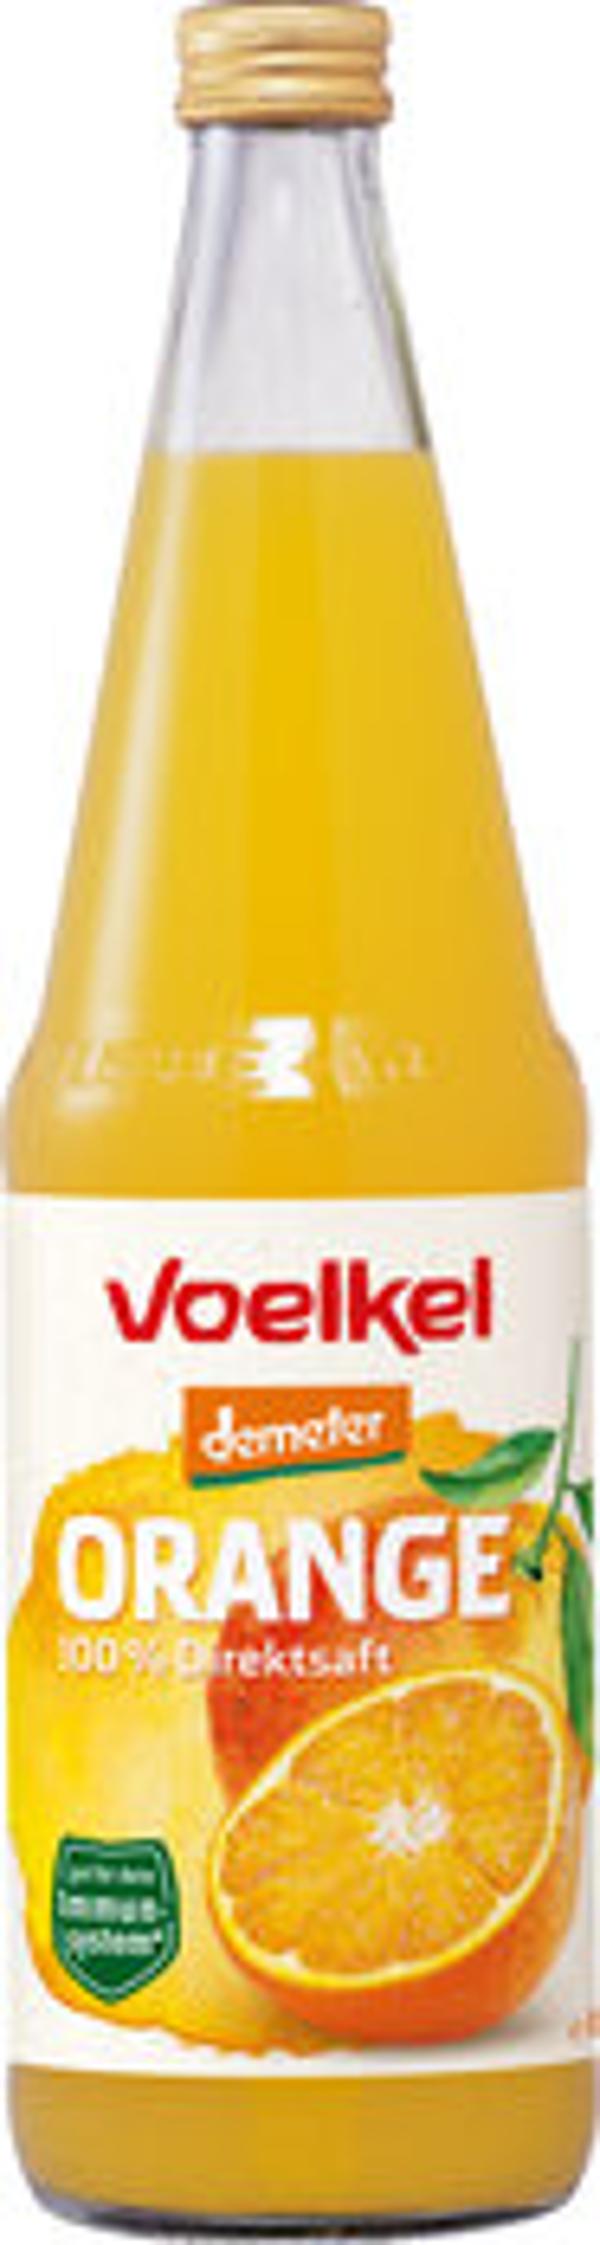 Produktfoto zu Voelkel Orangensaft 0,7l